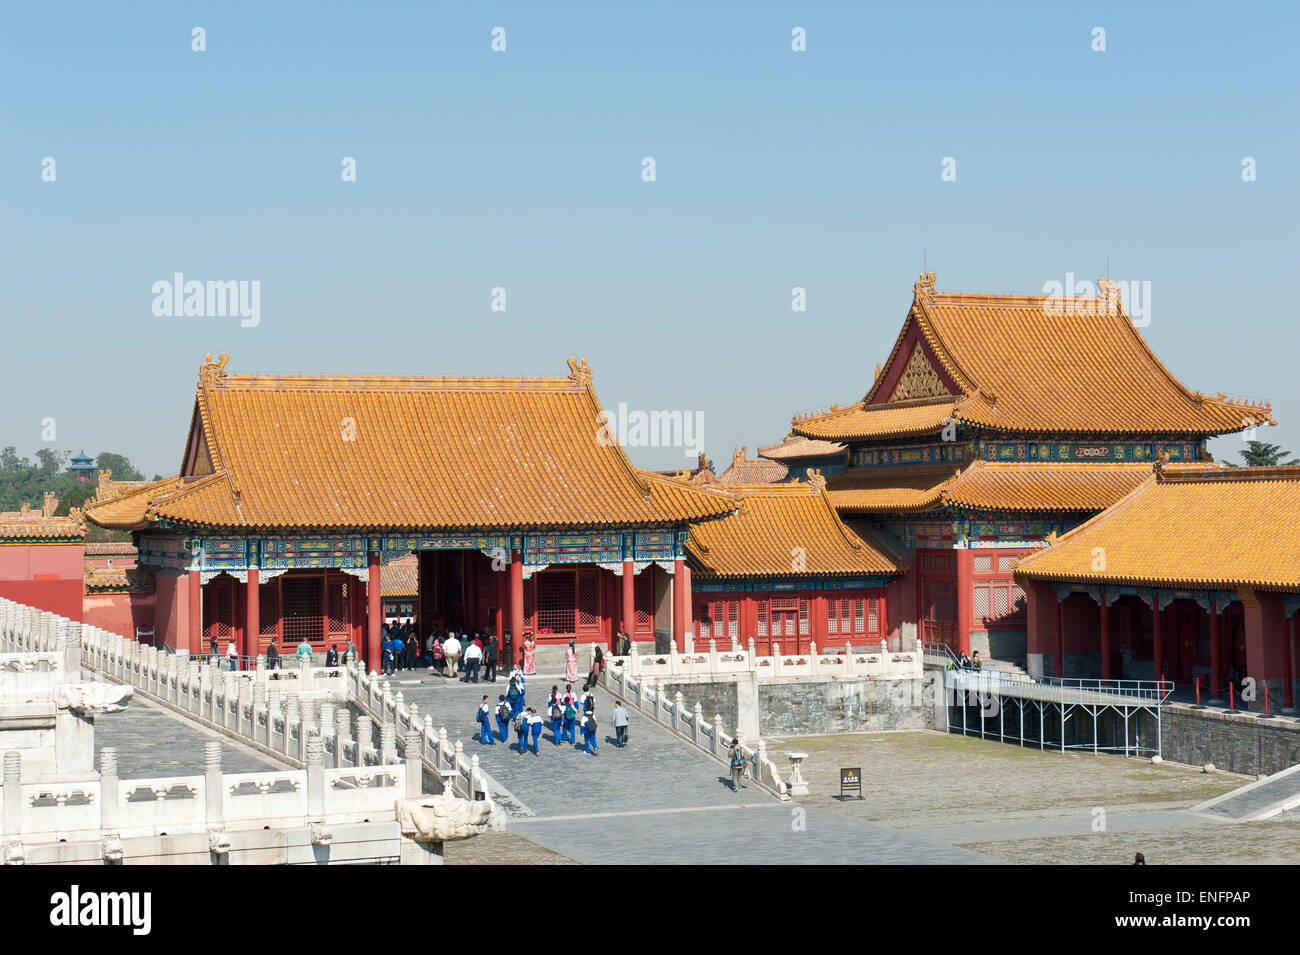 Arch Pavilion, Cité Interdite, Palais de l'empereur, Beijing, République populaire de Chine Banque D'Images